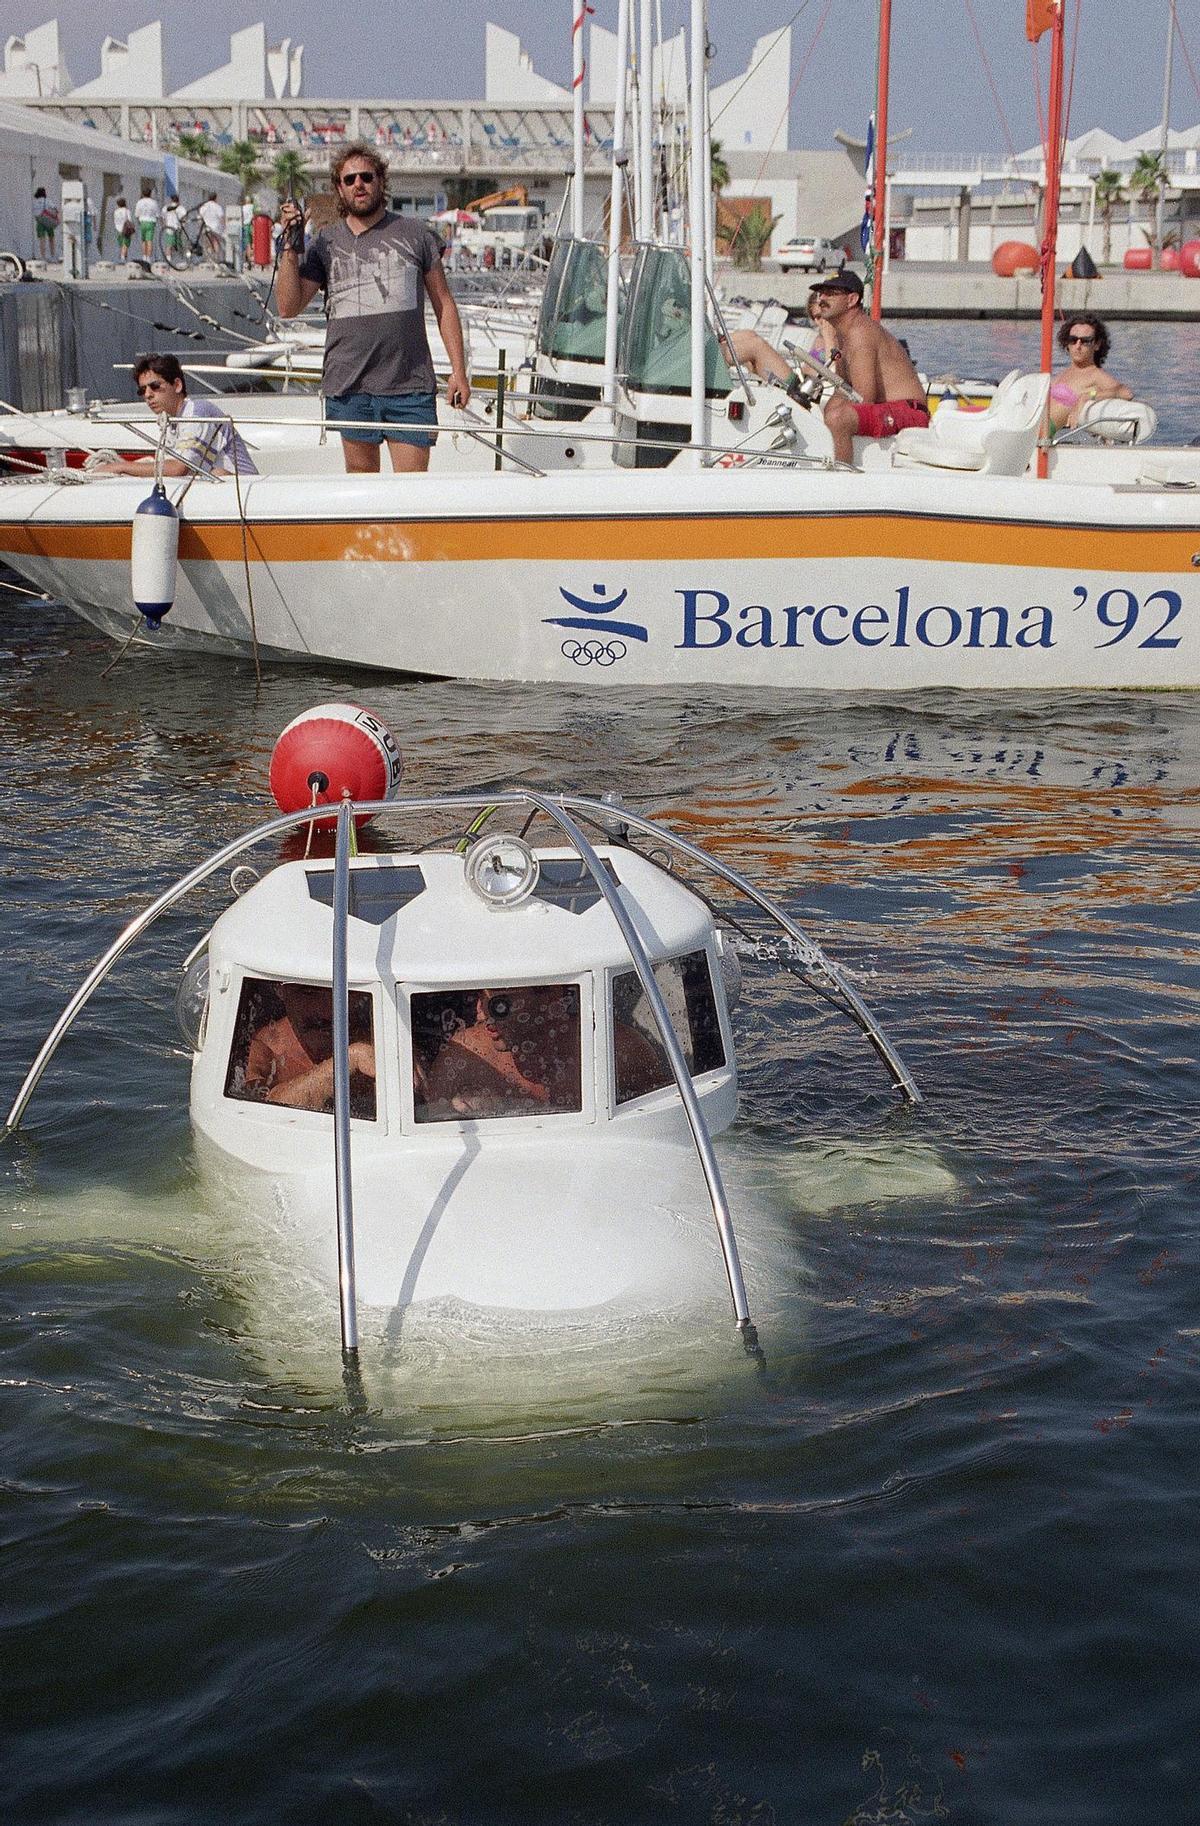 Un mini submarino de la Guardia Civil patrulla en el Puerto Olímpico de Barcelona, el 22 de julio de 1992. El submarino patrulló durante los Juegos el puerto cercano a la Villa Olímpica donde se alojaban los atletas y los lugares donde se celebraron pruebas en el mar.